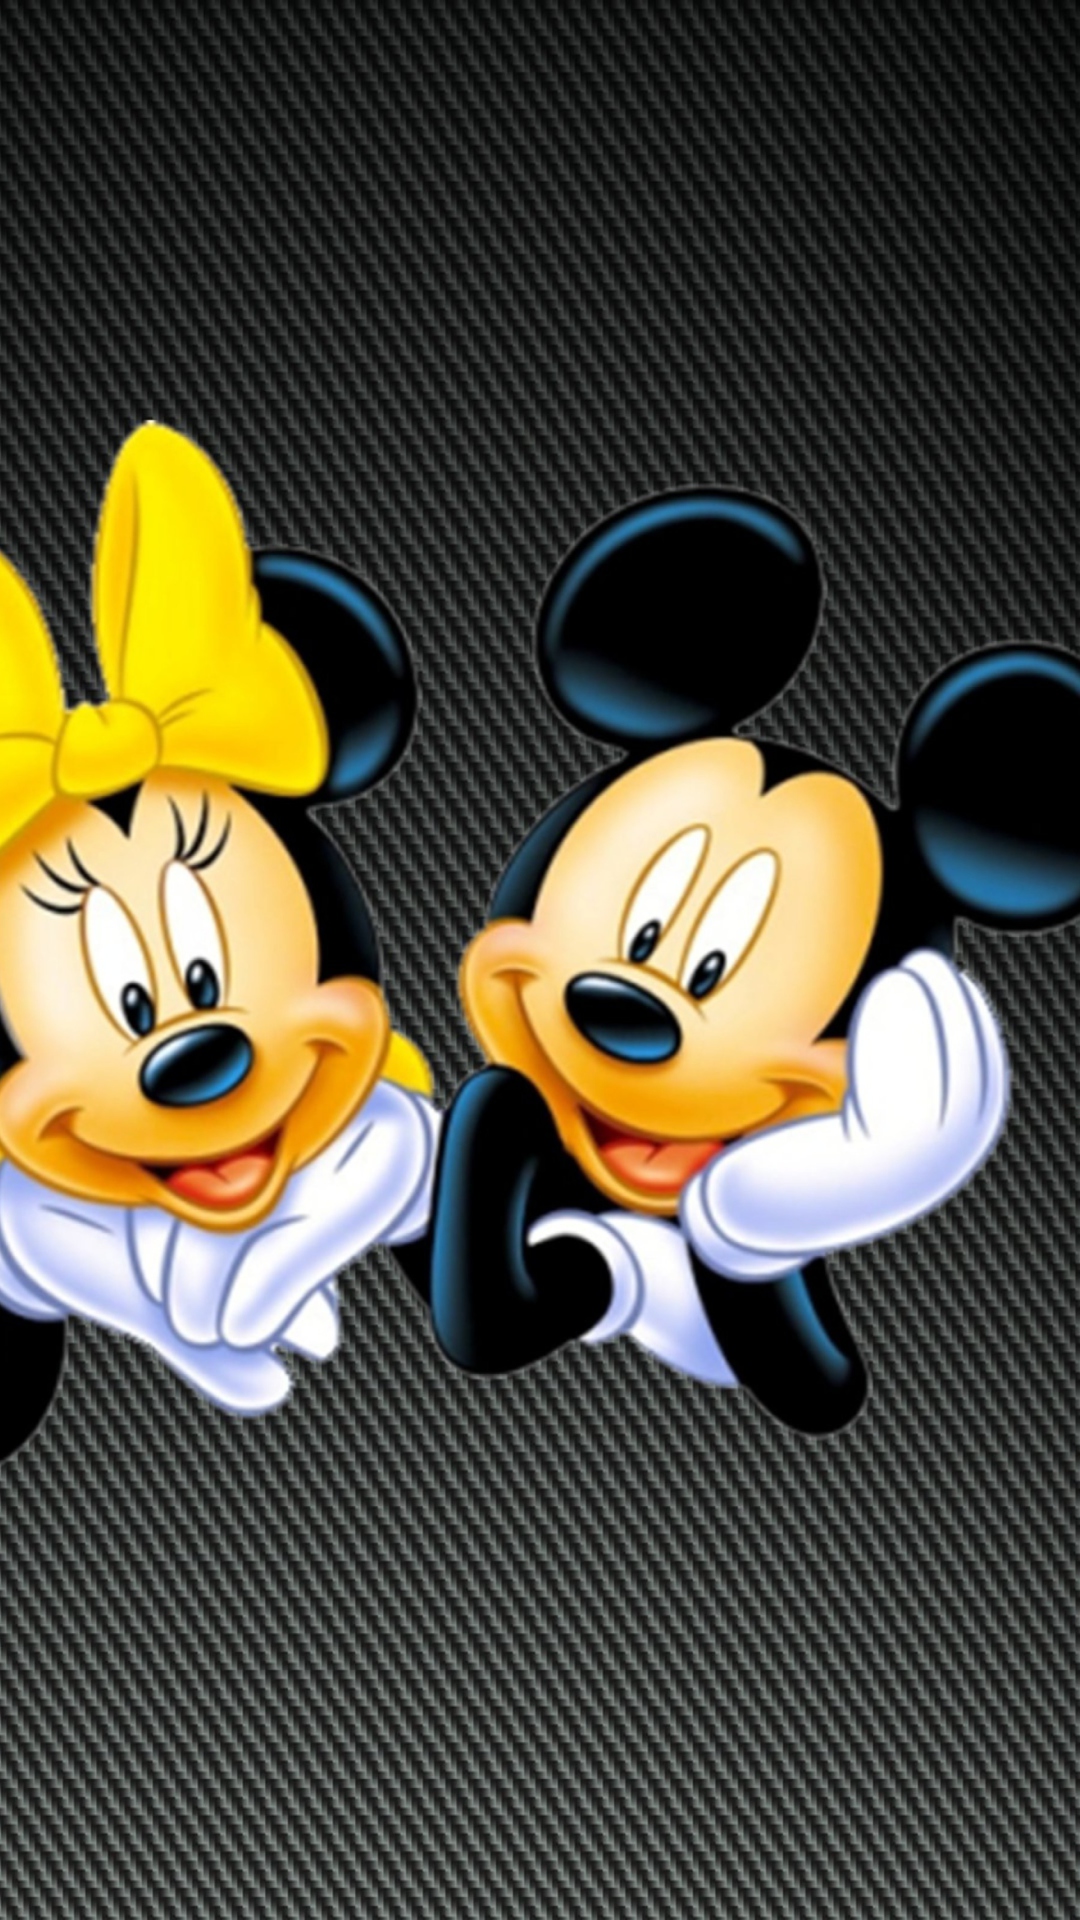 Mickey And Minnie wallpaper 1080x1920